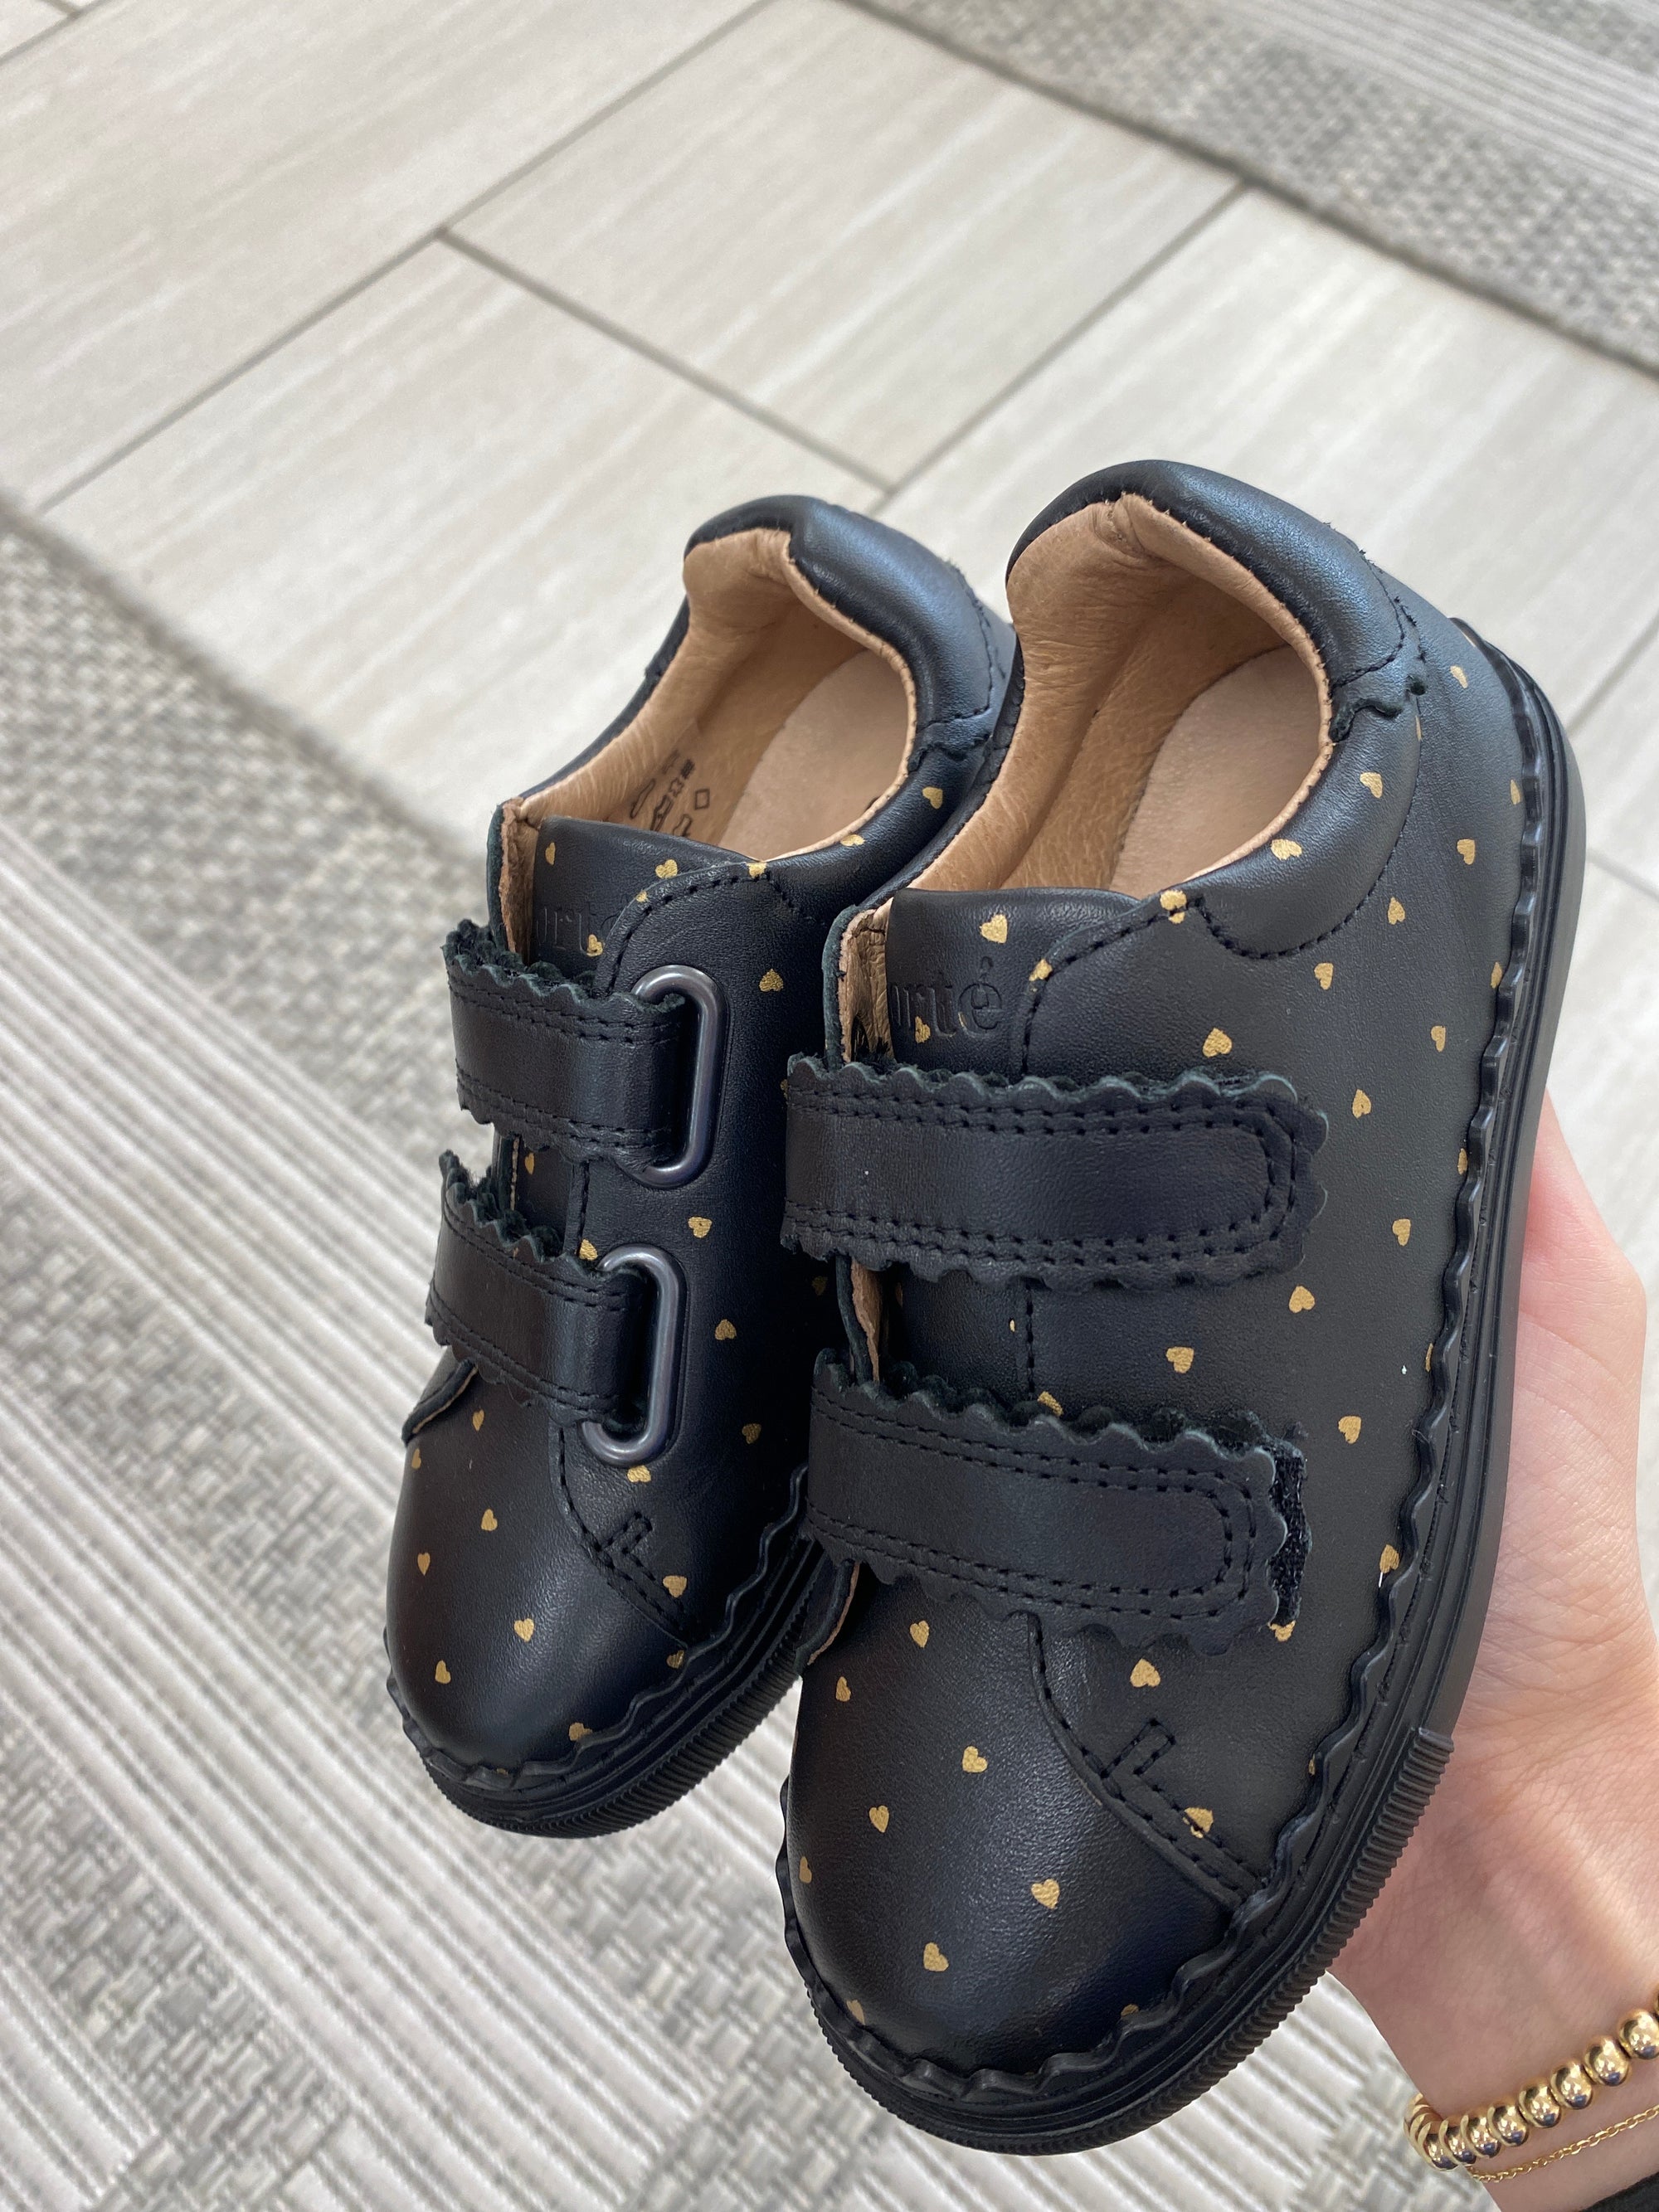 Porte Black and Gold Heart Velcro Sneaker-Tassel Children Shoes